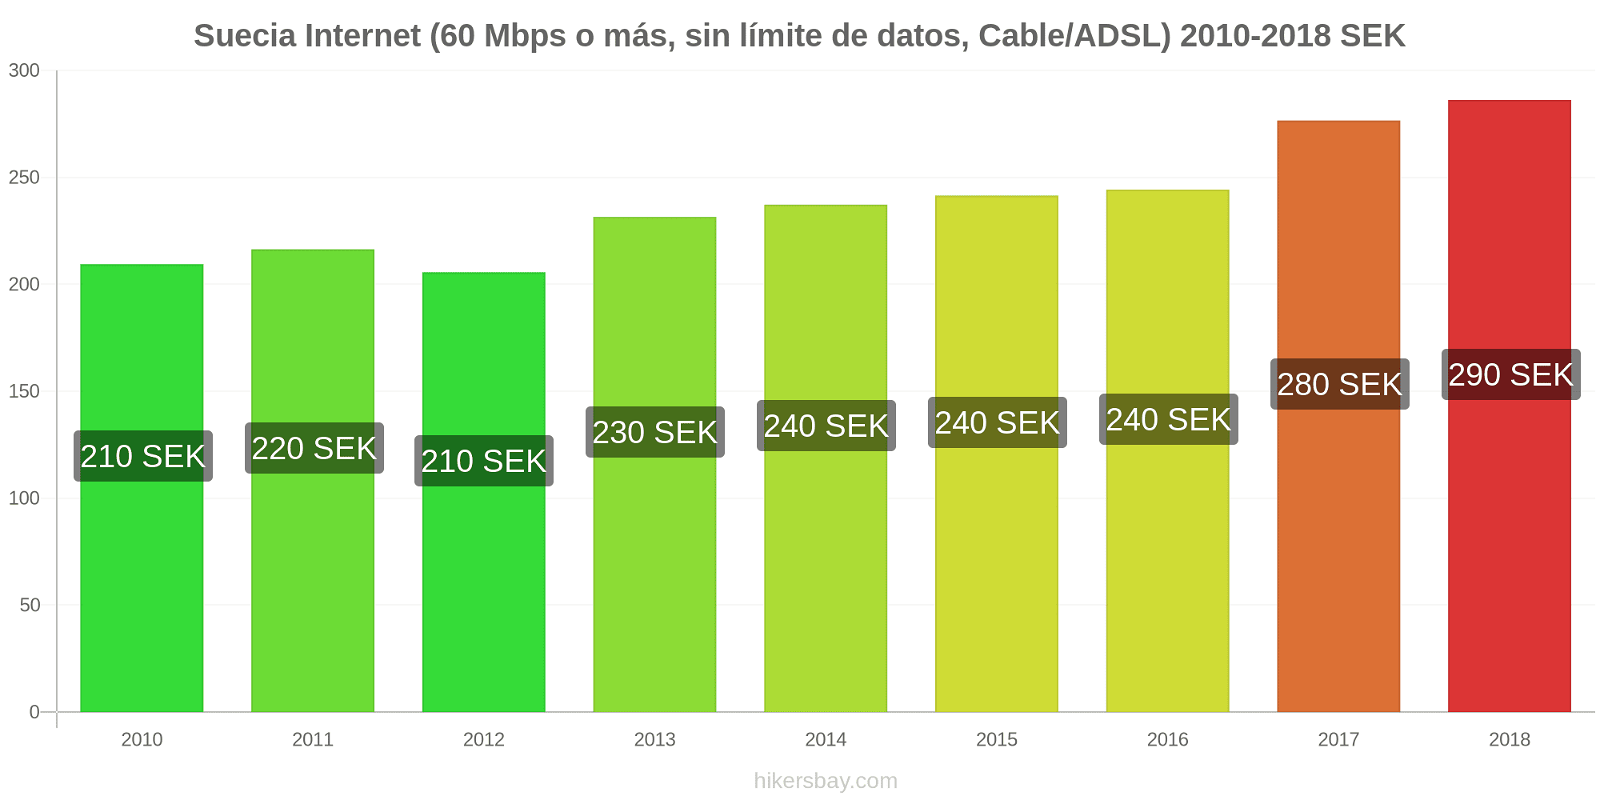 Suecia cambios de precios Internet (60 Mbps o más, datos ilimitados, cable/ADSL) hikersbay.com